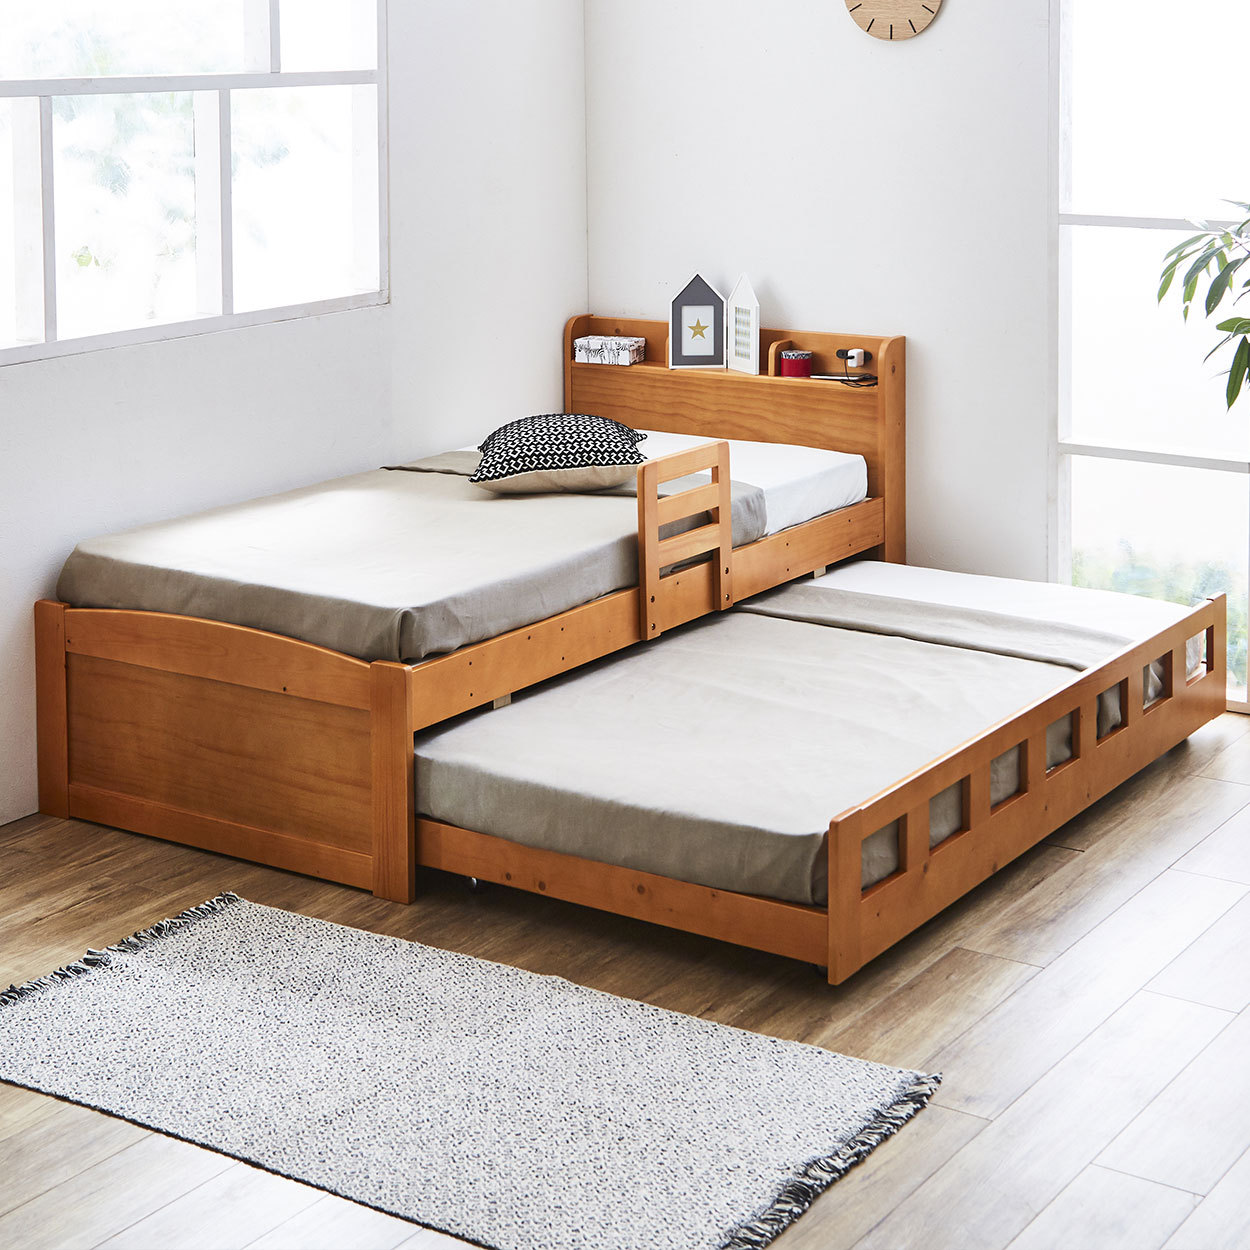 親子ベッド 2段ベッド シングル 木製 すのこ 棚付き 可動式サイドガード コンセント 低ホルムアルデヒド 新商品